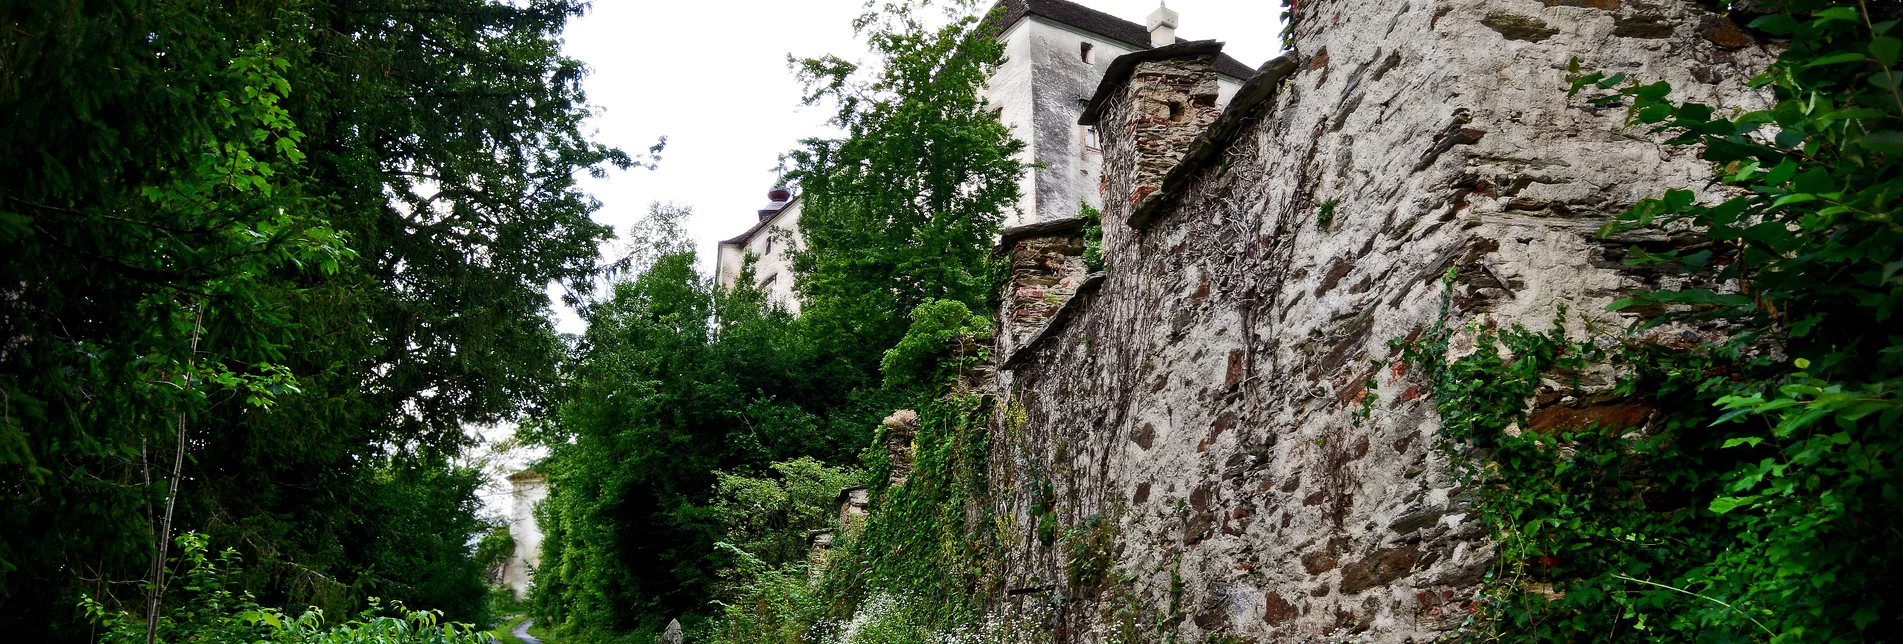 Frondsberg Castle in Birkfeld in Eastern Styria | © Oststeiermark Tourismus | Christian Strassegger